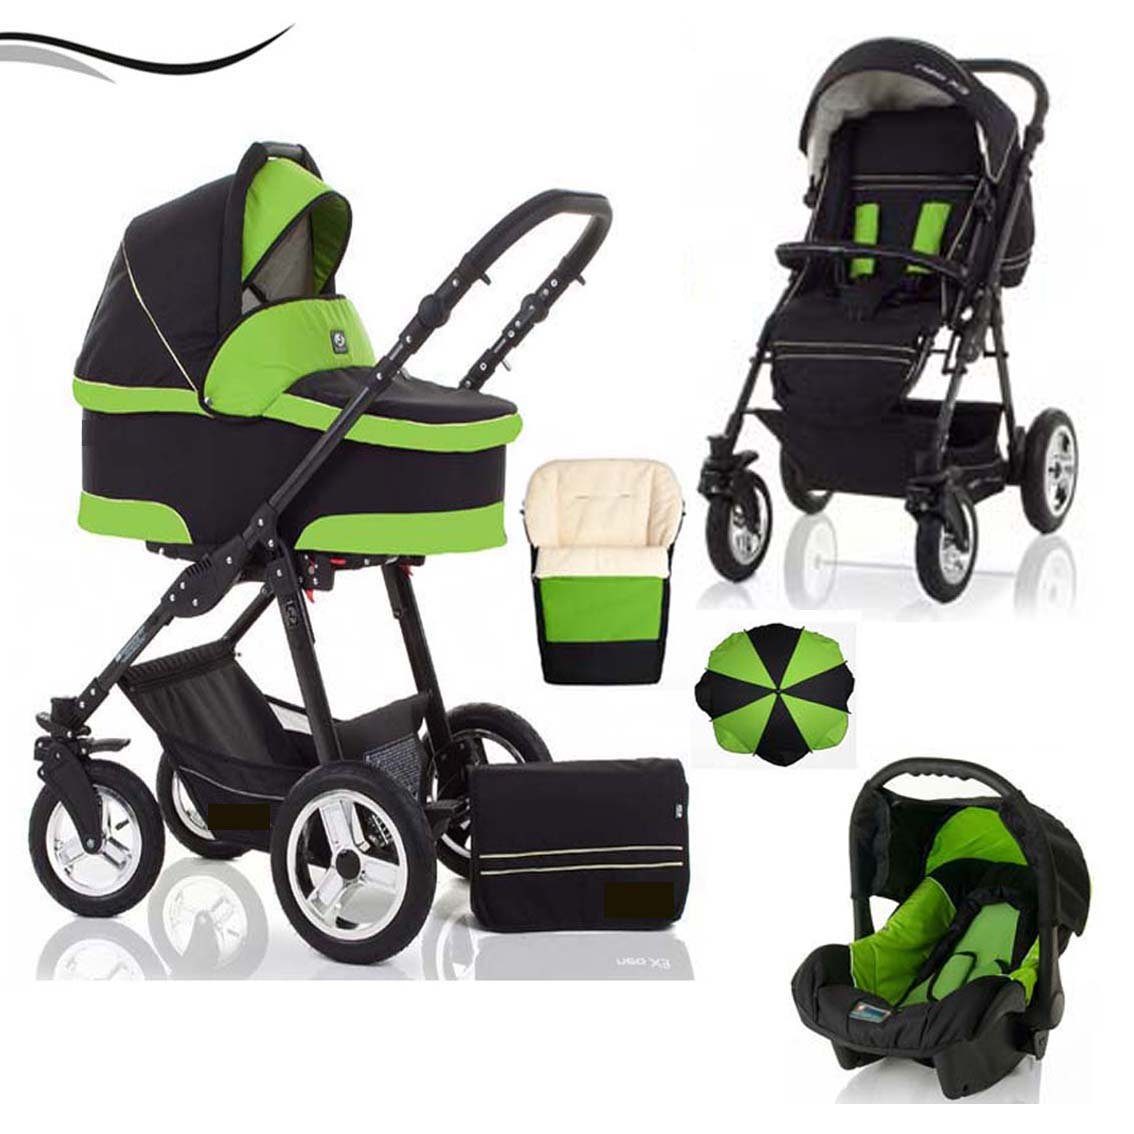 babies-on-wheels Kombi-Kinderwagen City Star 5 in 1 inkl. Autositz, Sonnenschirm und Fußsack - 18 Teile - von Geburt bis 4 Jahre in 16 Farben Schwarz-Grün